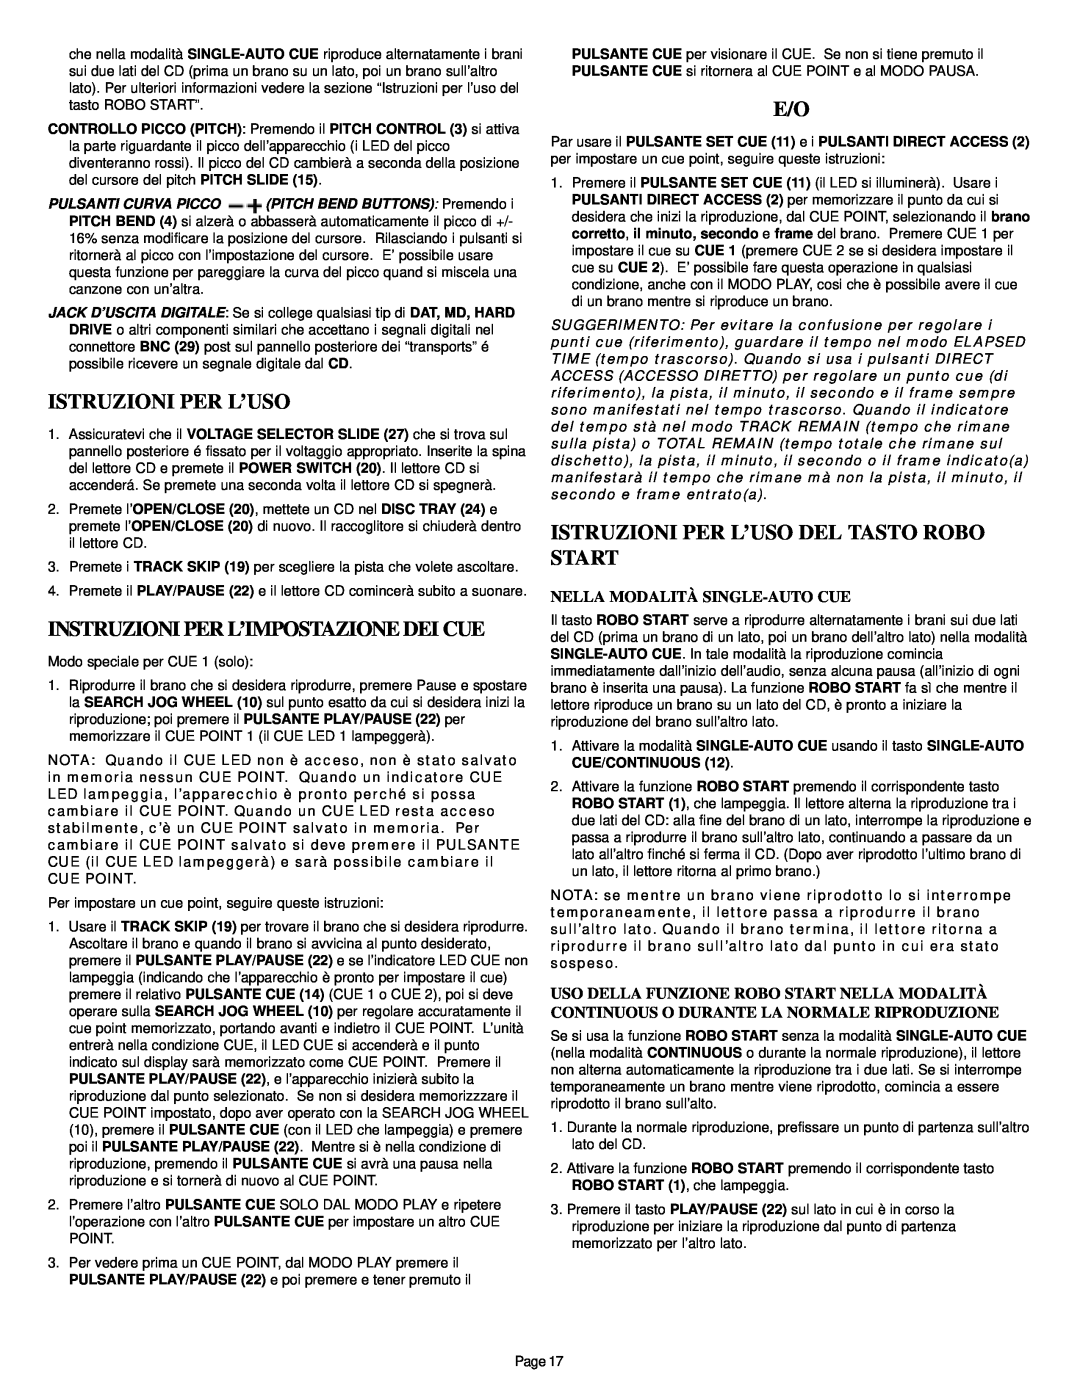 Gemini CDS-2000 manual Instruzioni Per L’Impostazione Dei Cue, Istruzioni Per L’Uso Del Tasto Robo Start 